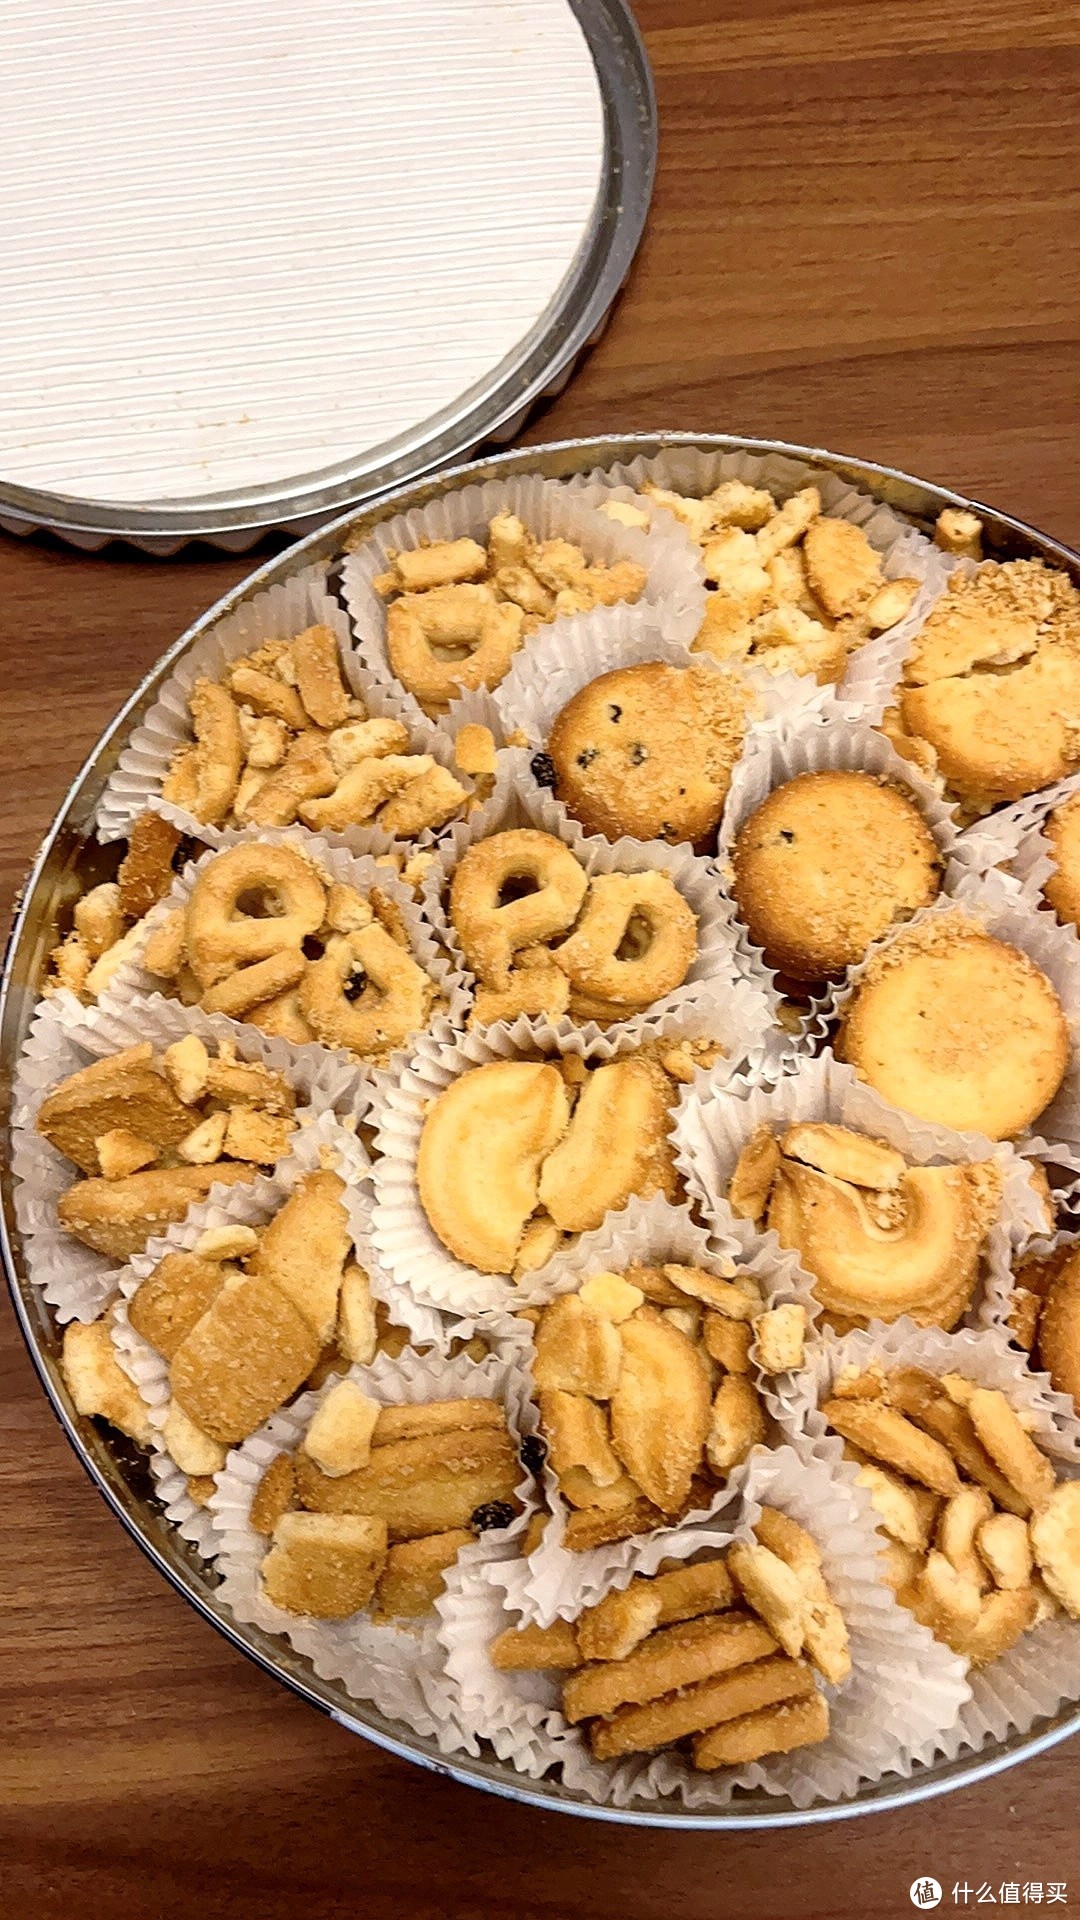 寄托思念，中秋佳节送皇冠丹麦曲奇饼干，甜蜜温馨共度团圆时刻
